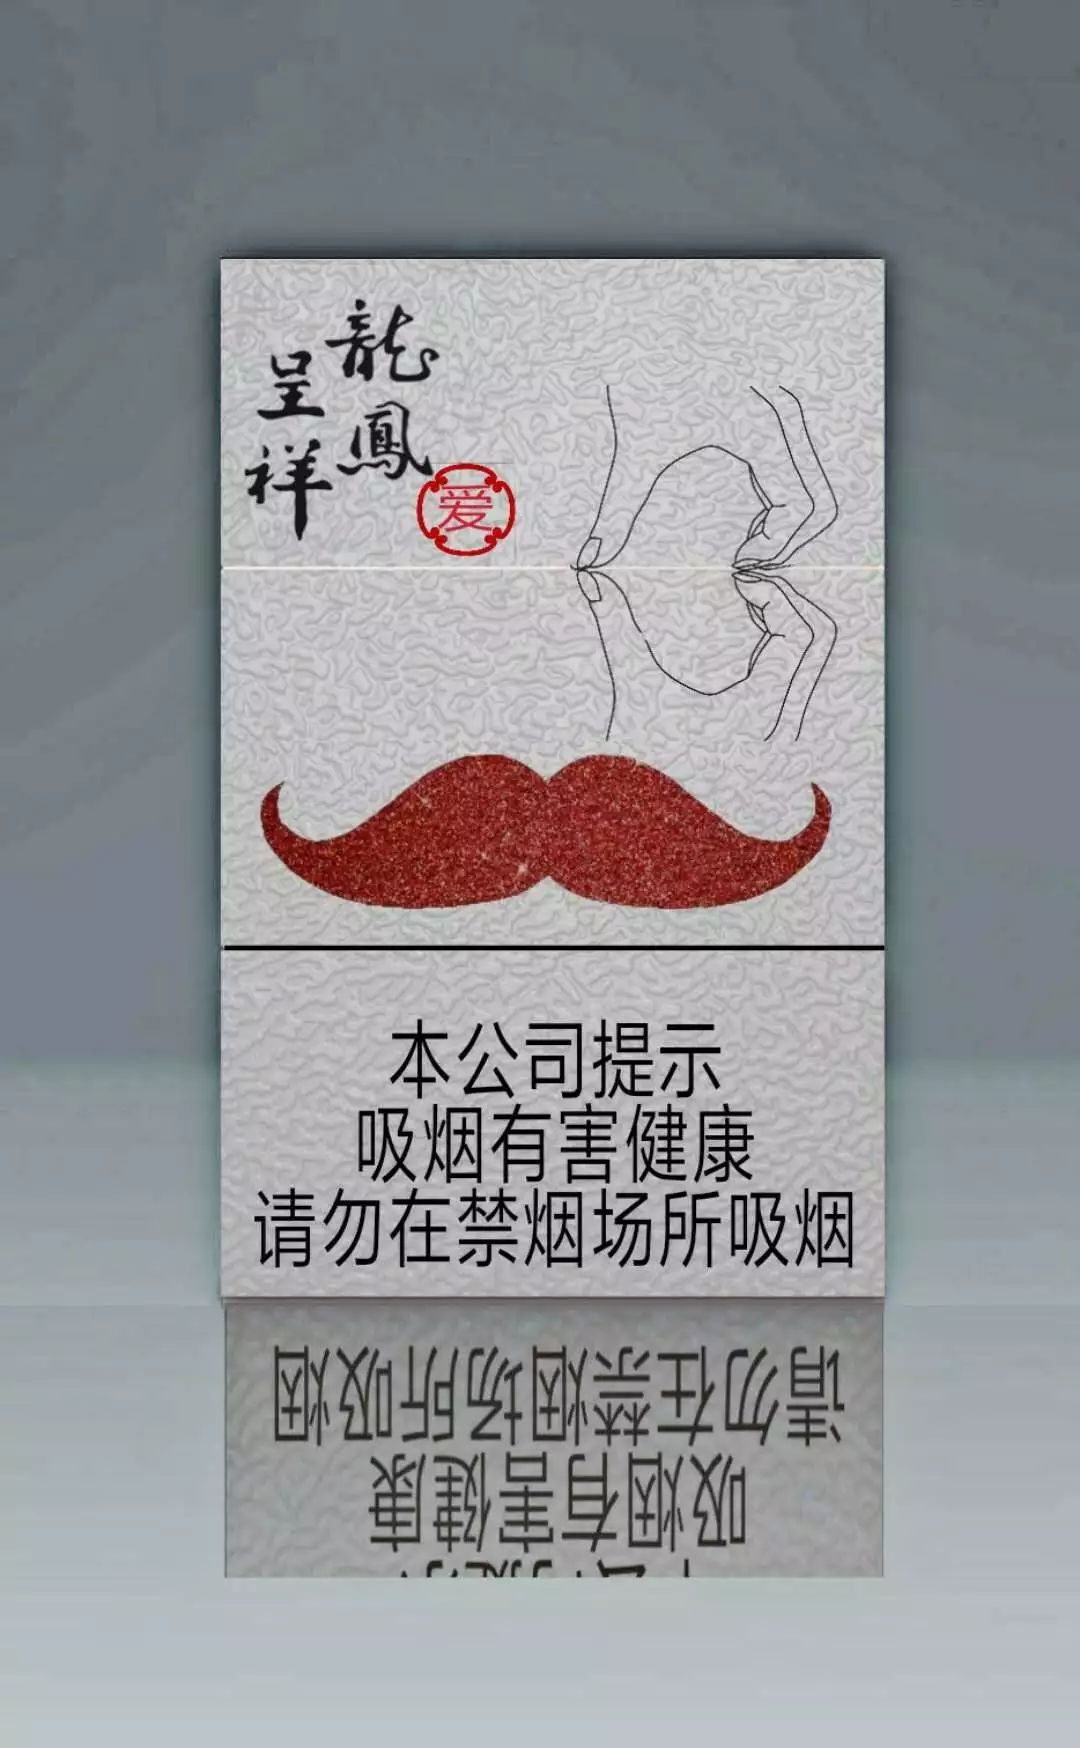 包含贵州磨砂香烟高仿批发市场的词条